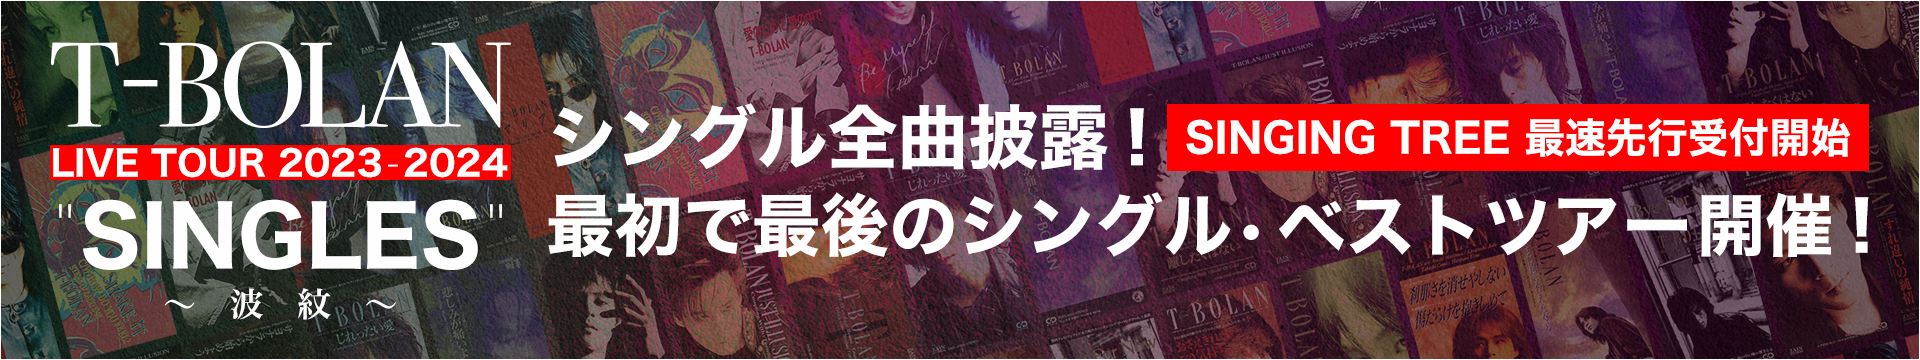 T-BOLAN LIVE TOUR 2023-2024 SINGLES 〜波紋〜